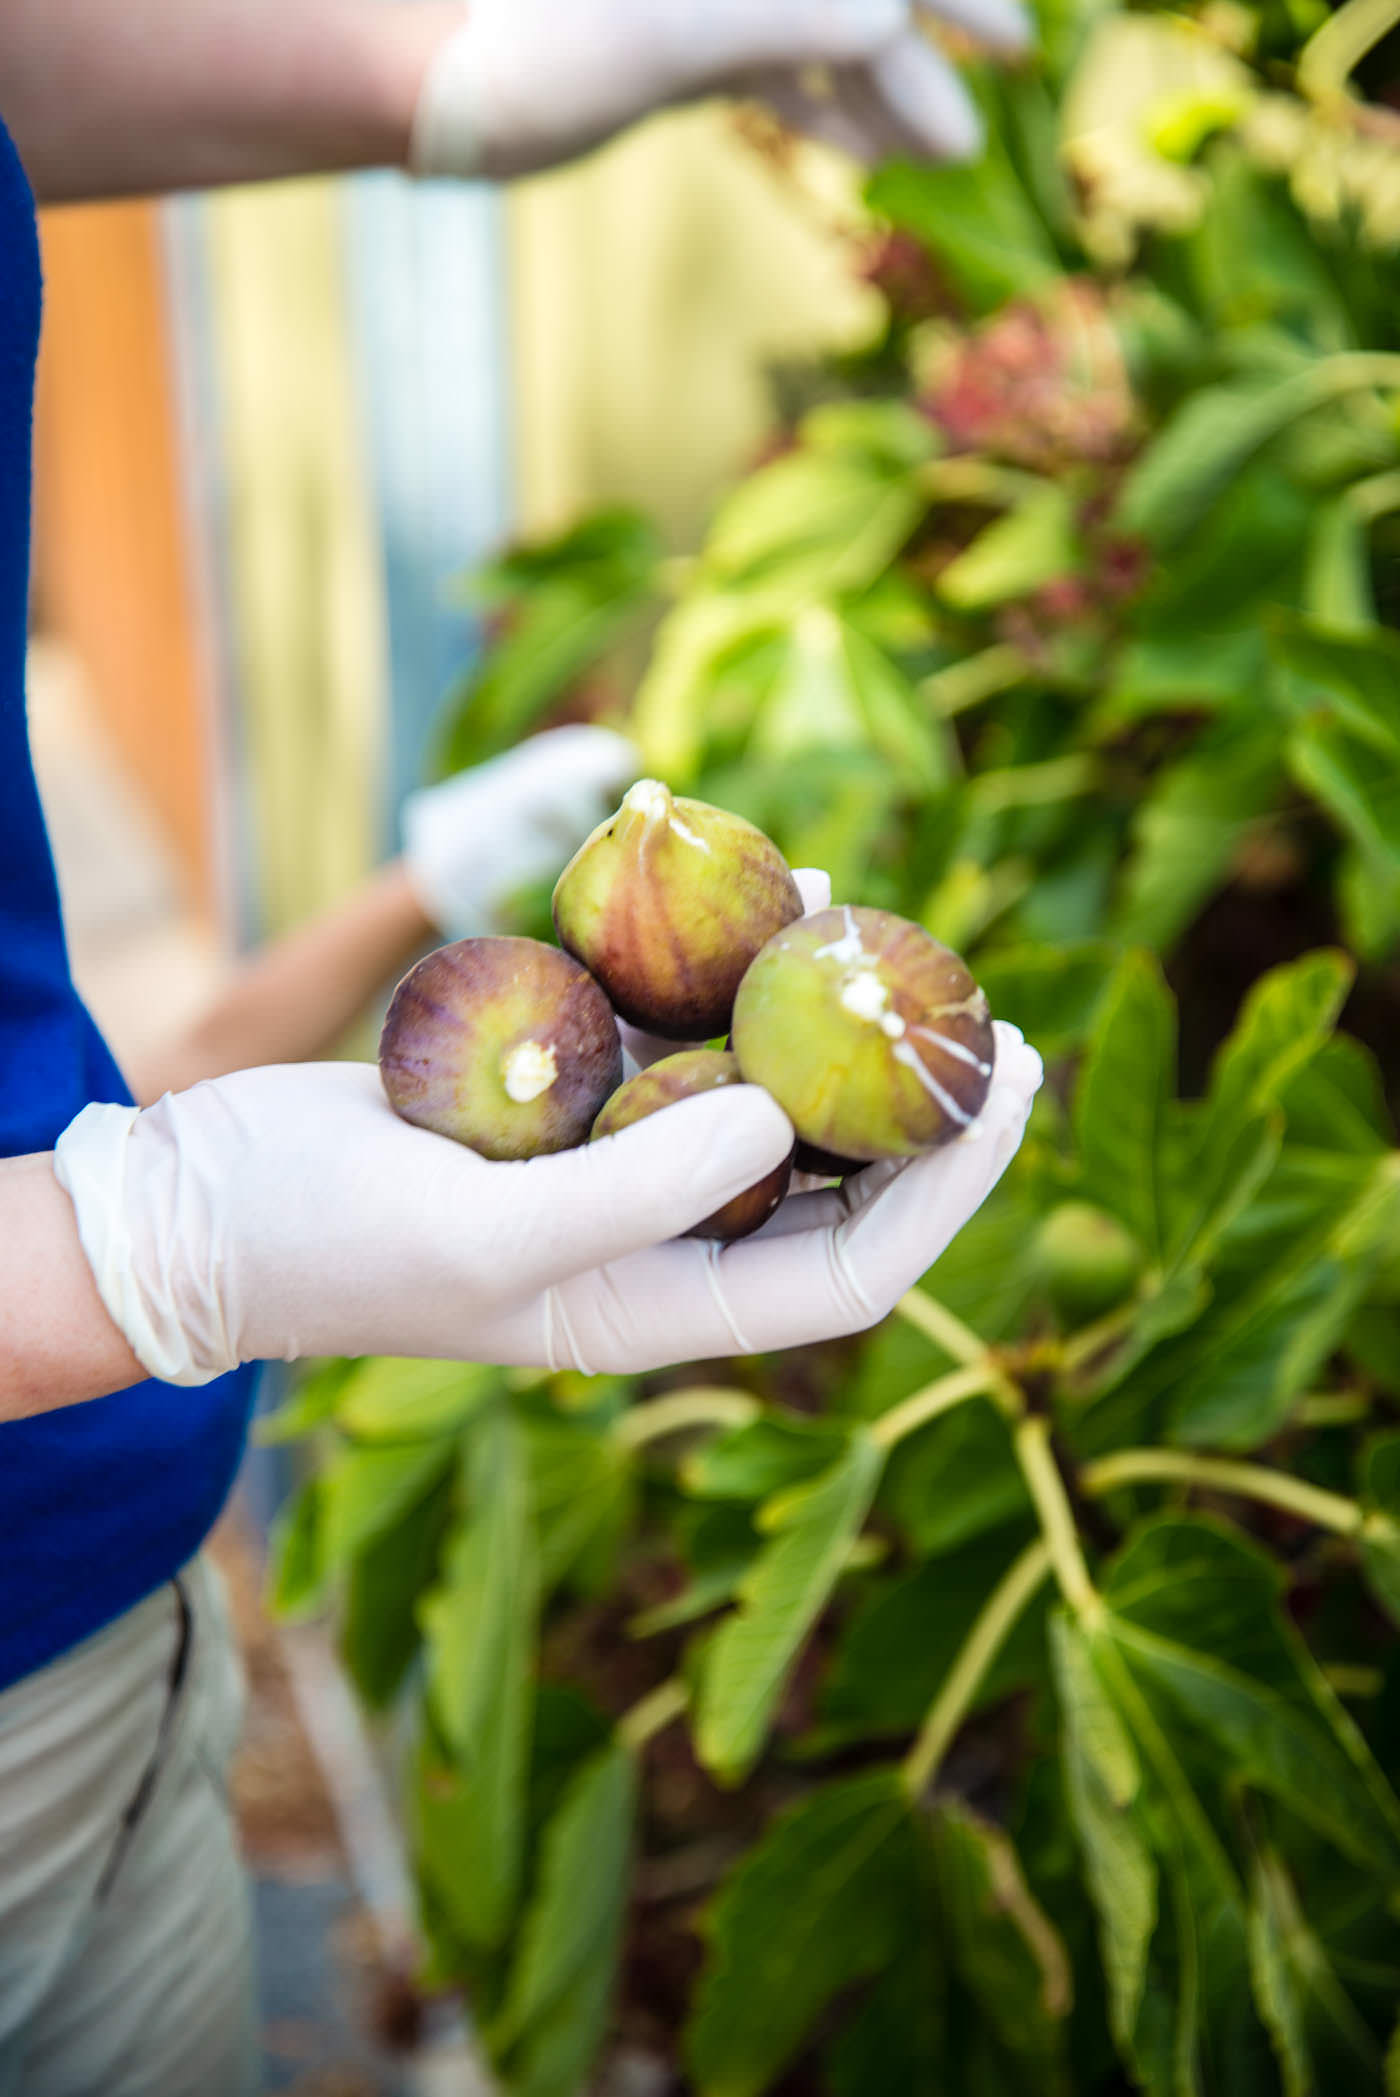 Picking figs